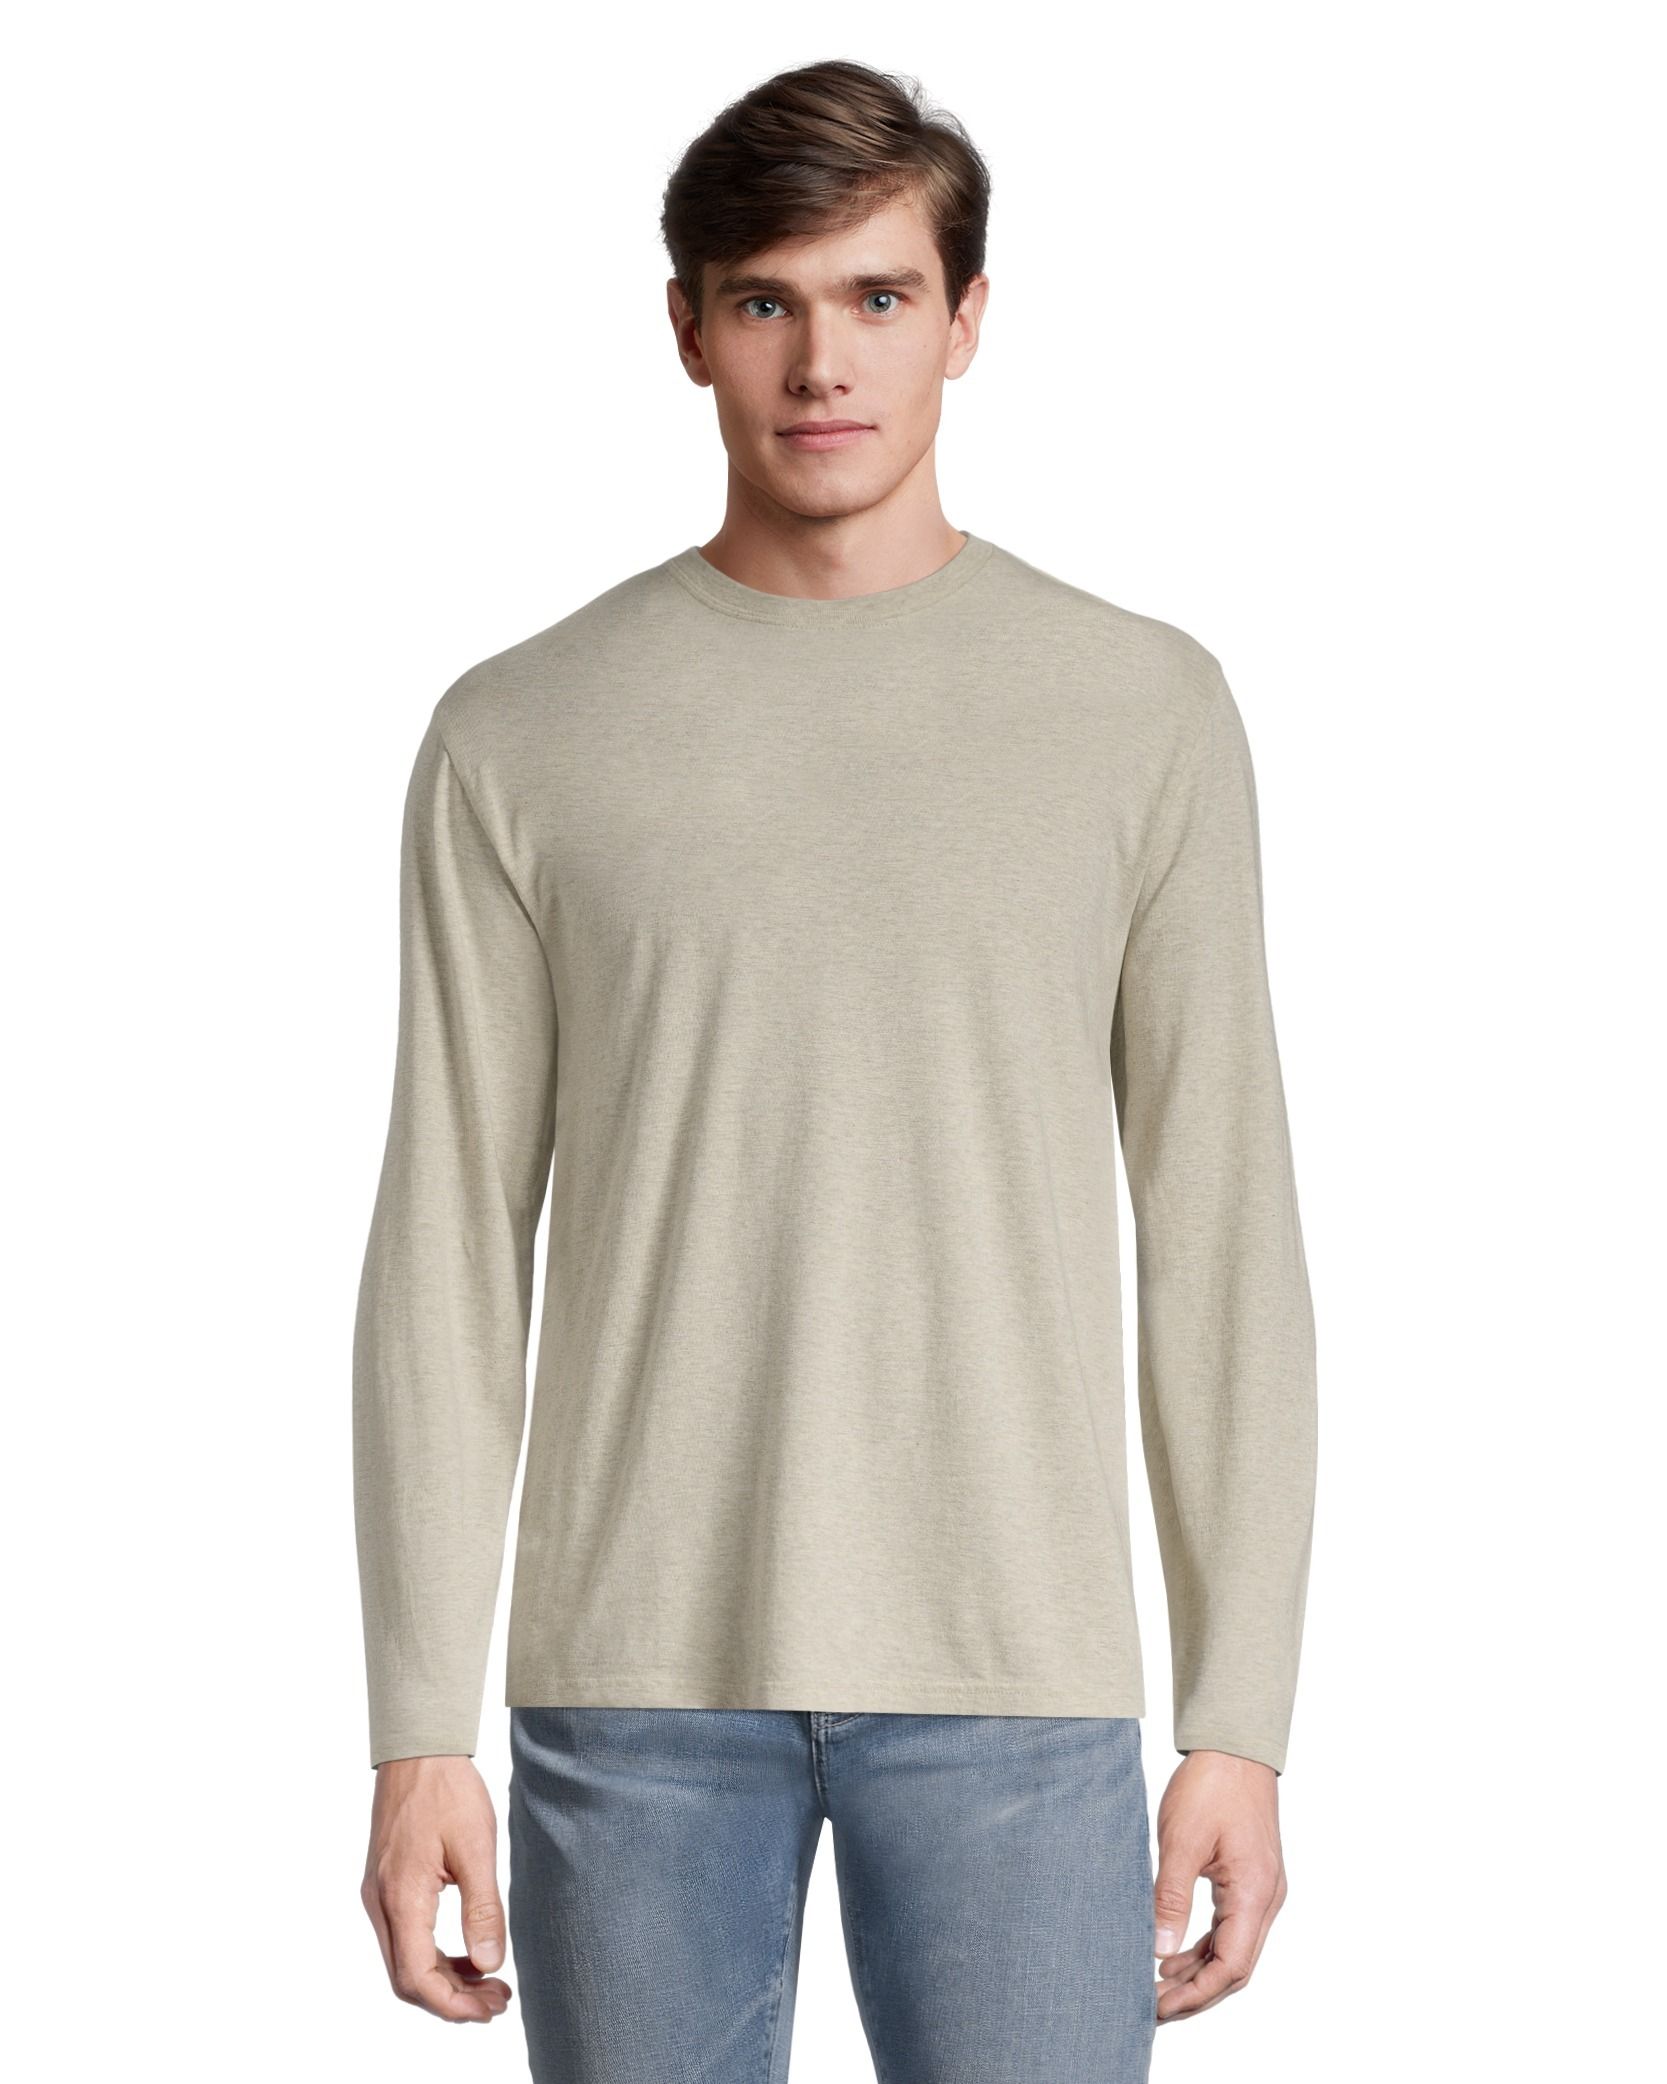 3 Pack: Men's Sweatshirts Fleece Long Sleeve Mens Crewneck